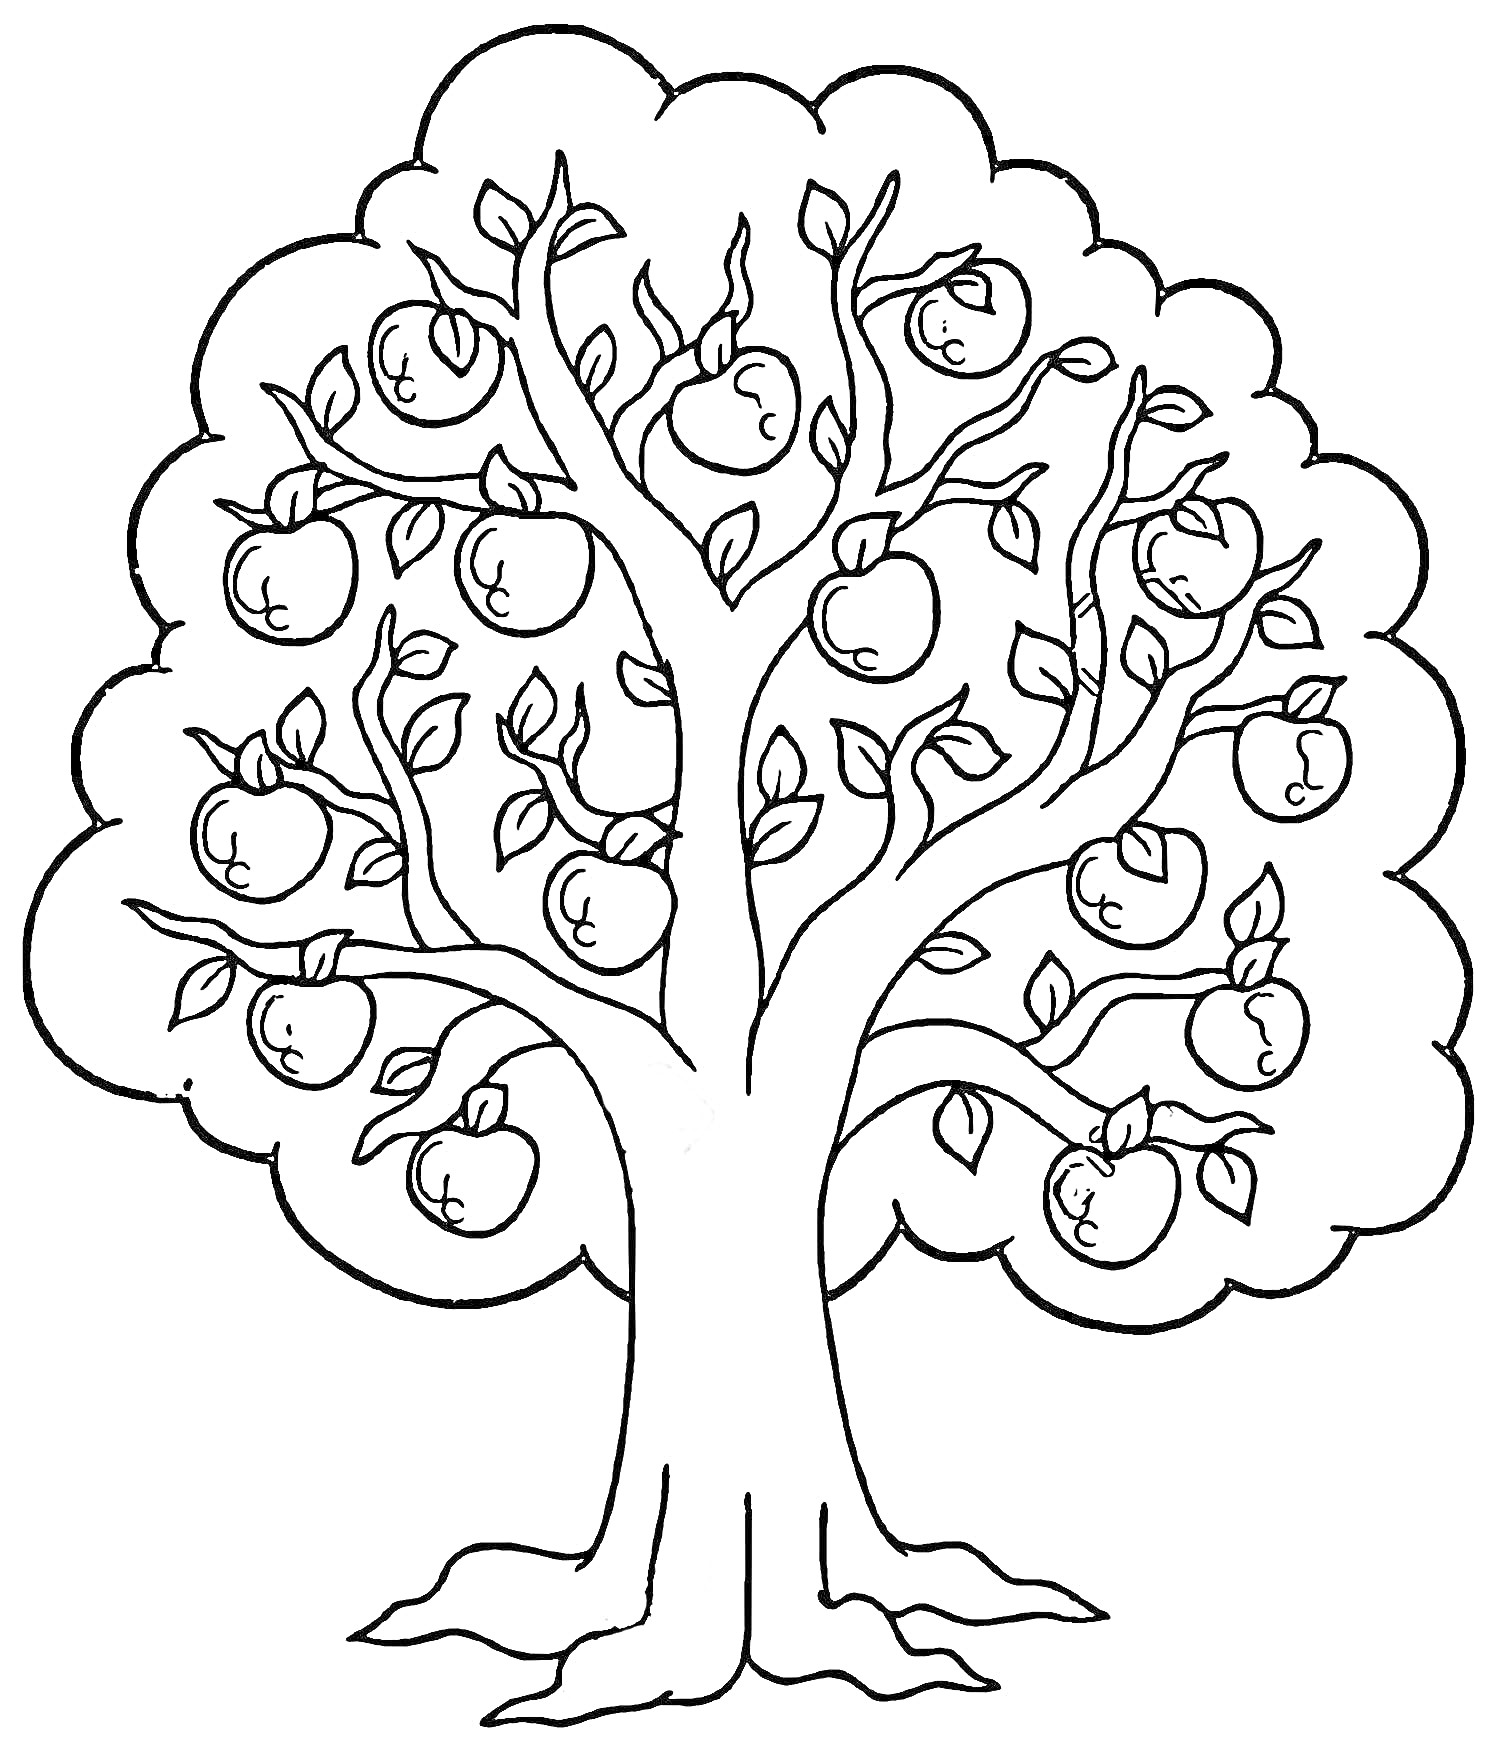 Раскраска Яблоня с яблоками и листьями